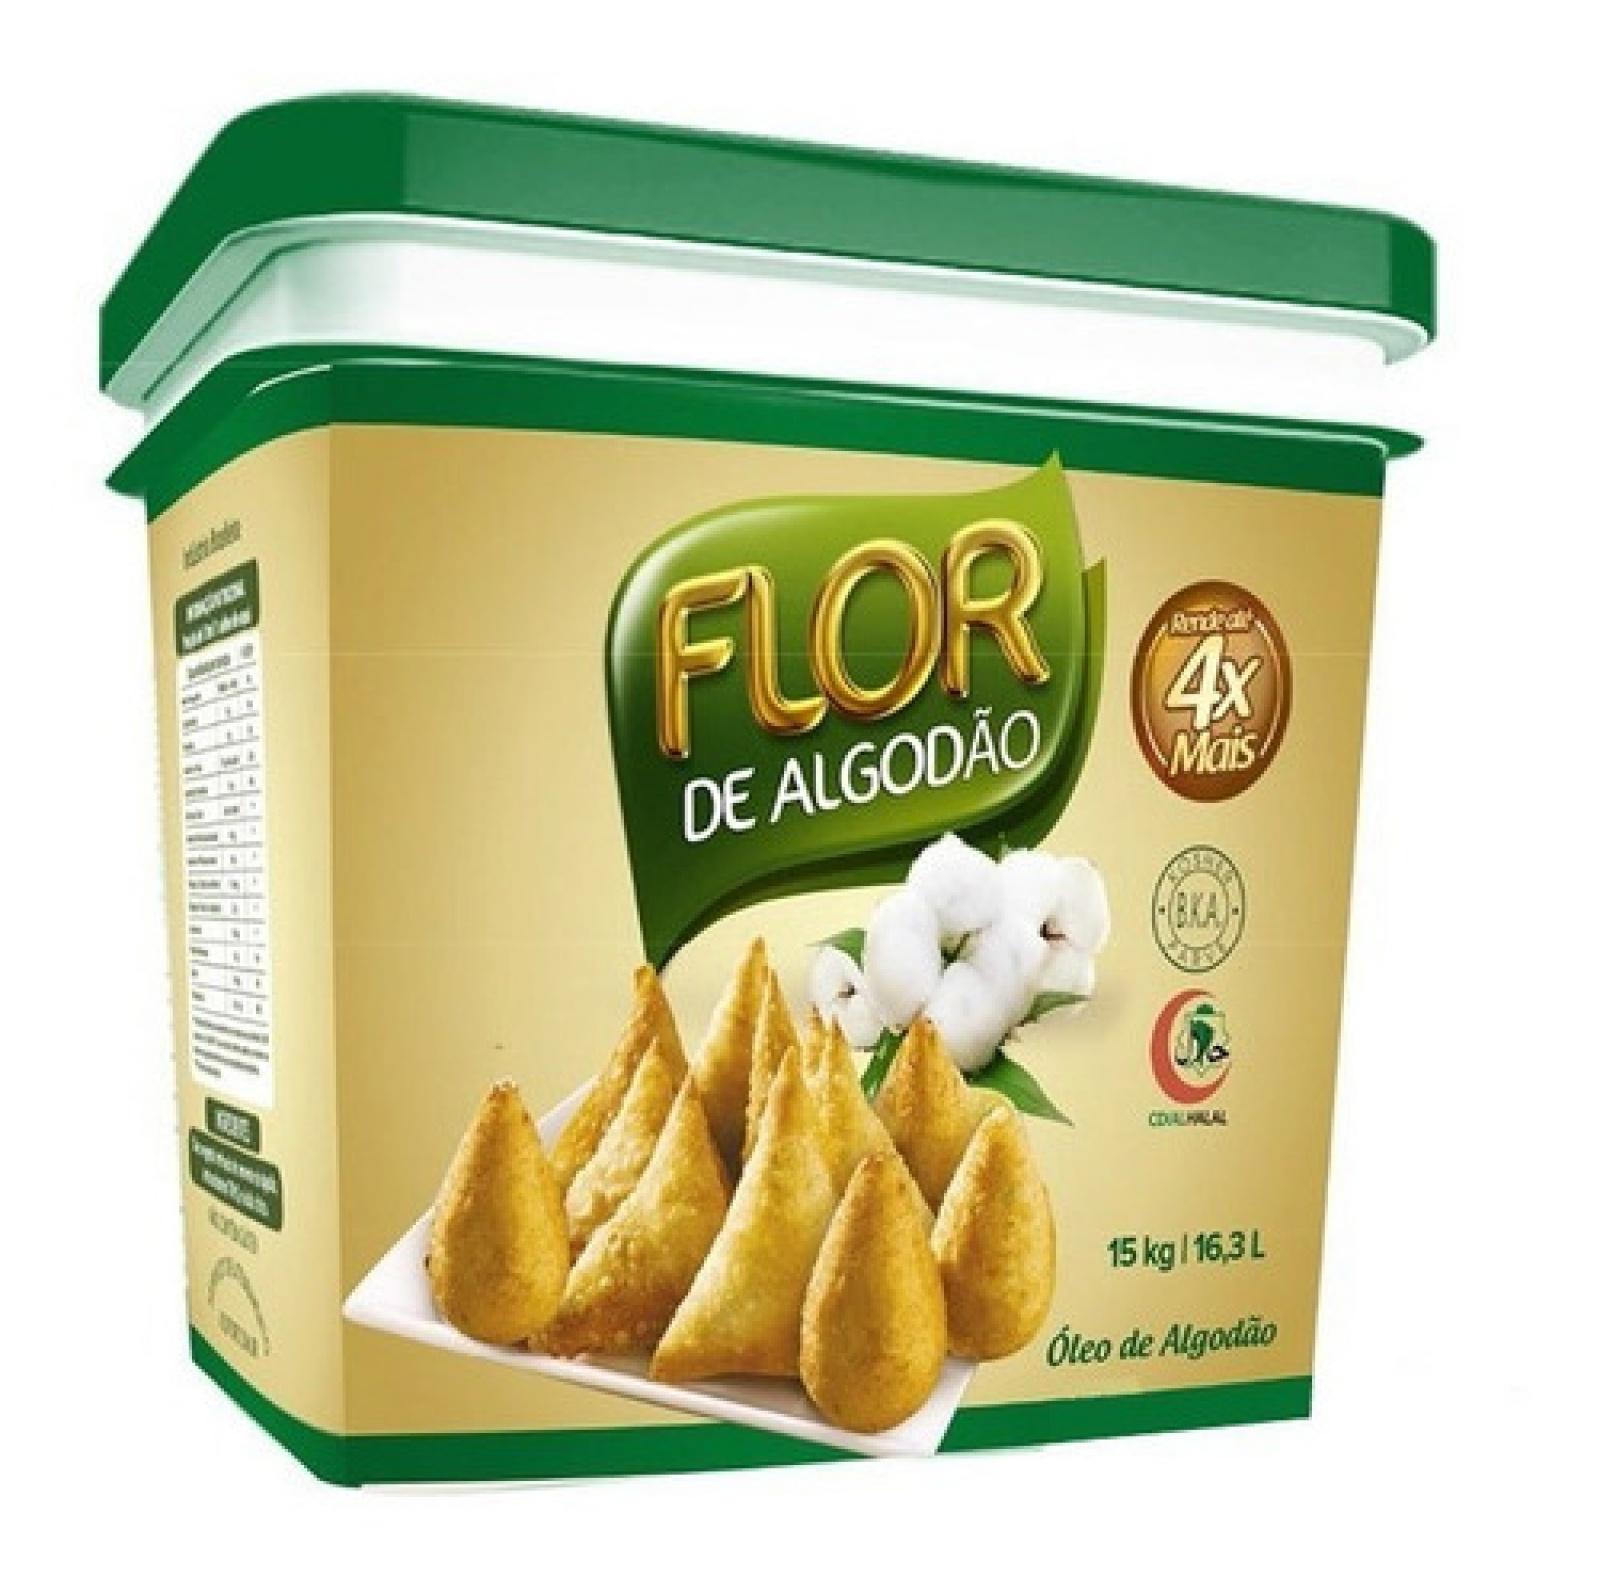 Òleo Algodão-Flor alg. 16,3LT